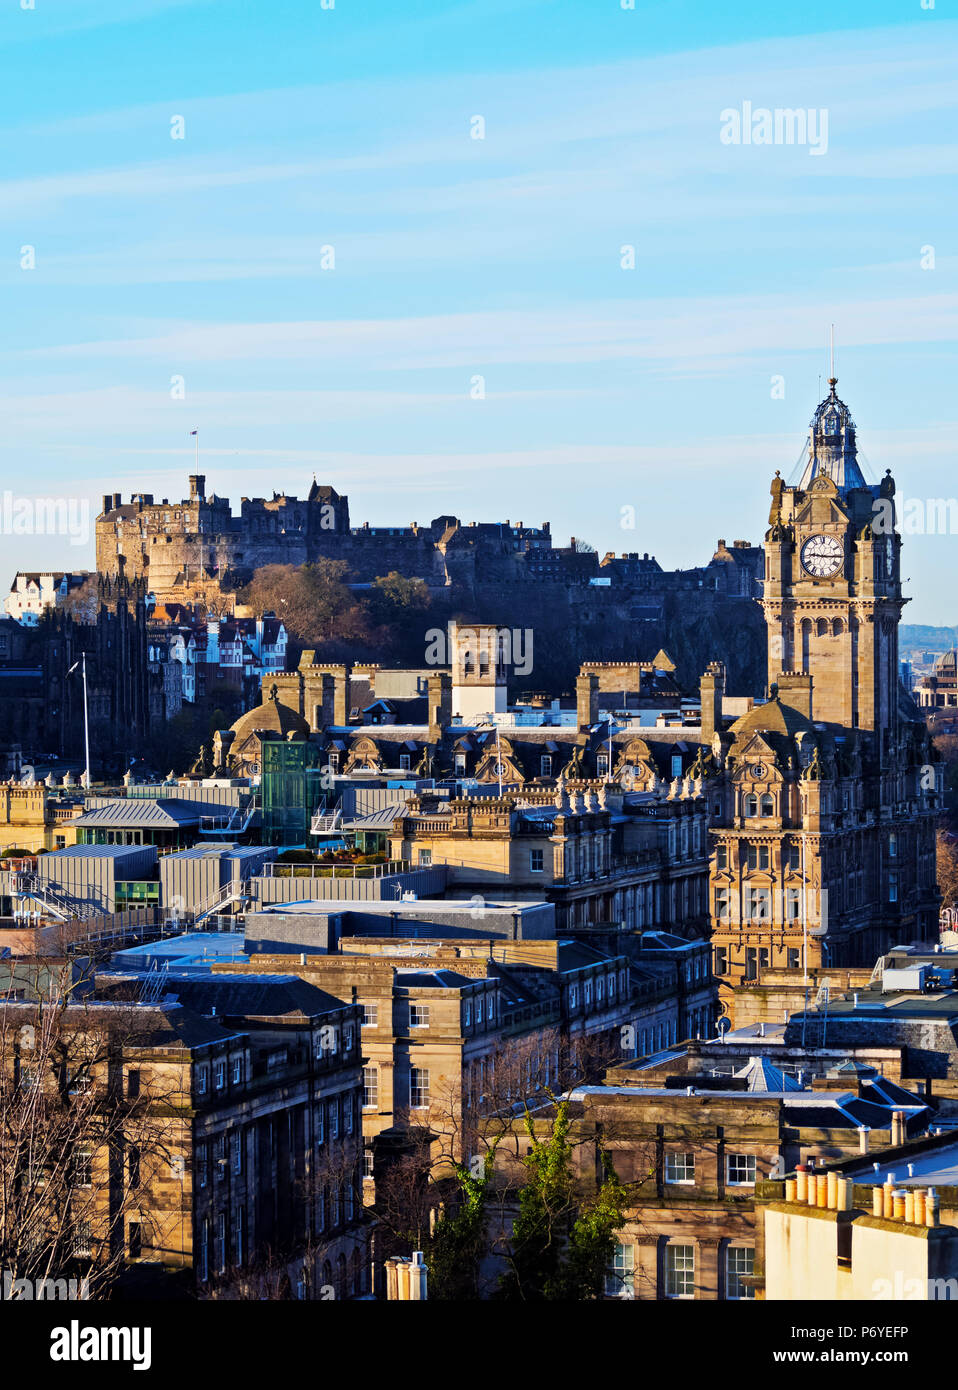 Reino Unido, Escocia, Lothian, Edimburgo, Calton Hill, vista de la Balmoral Hotel Torre del Reloj y el castillo. Foto de stock